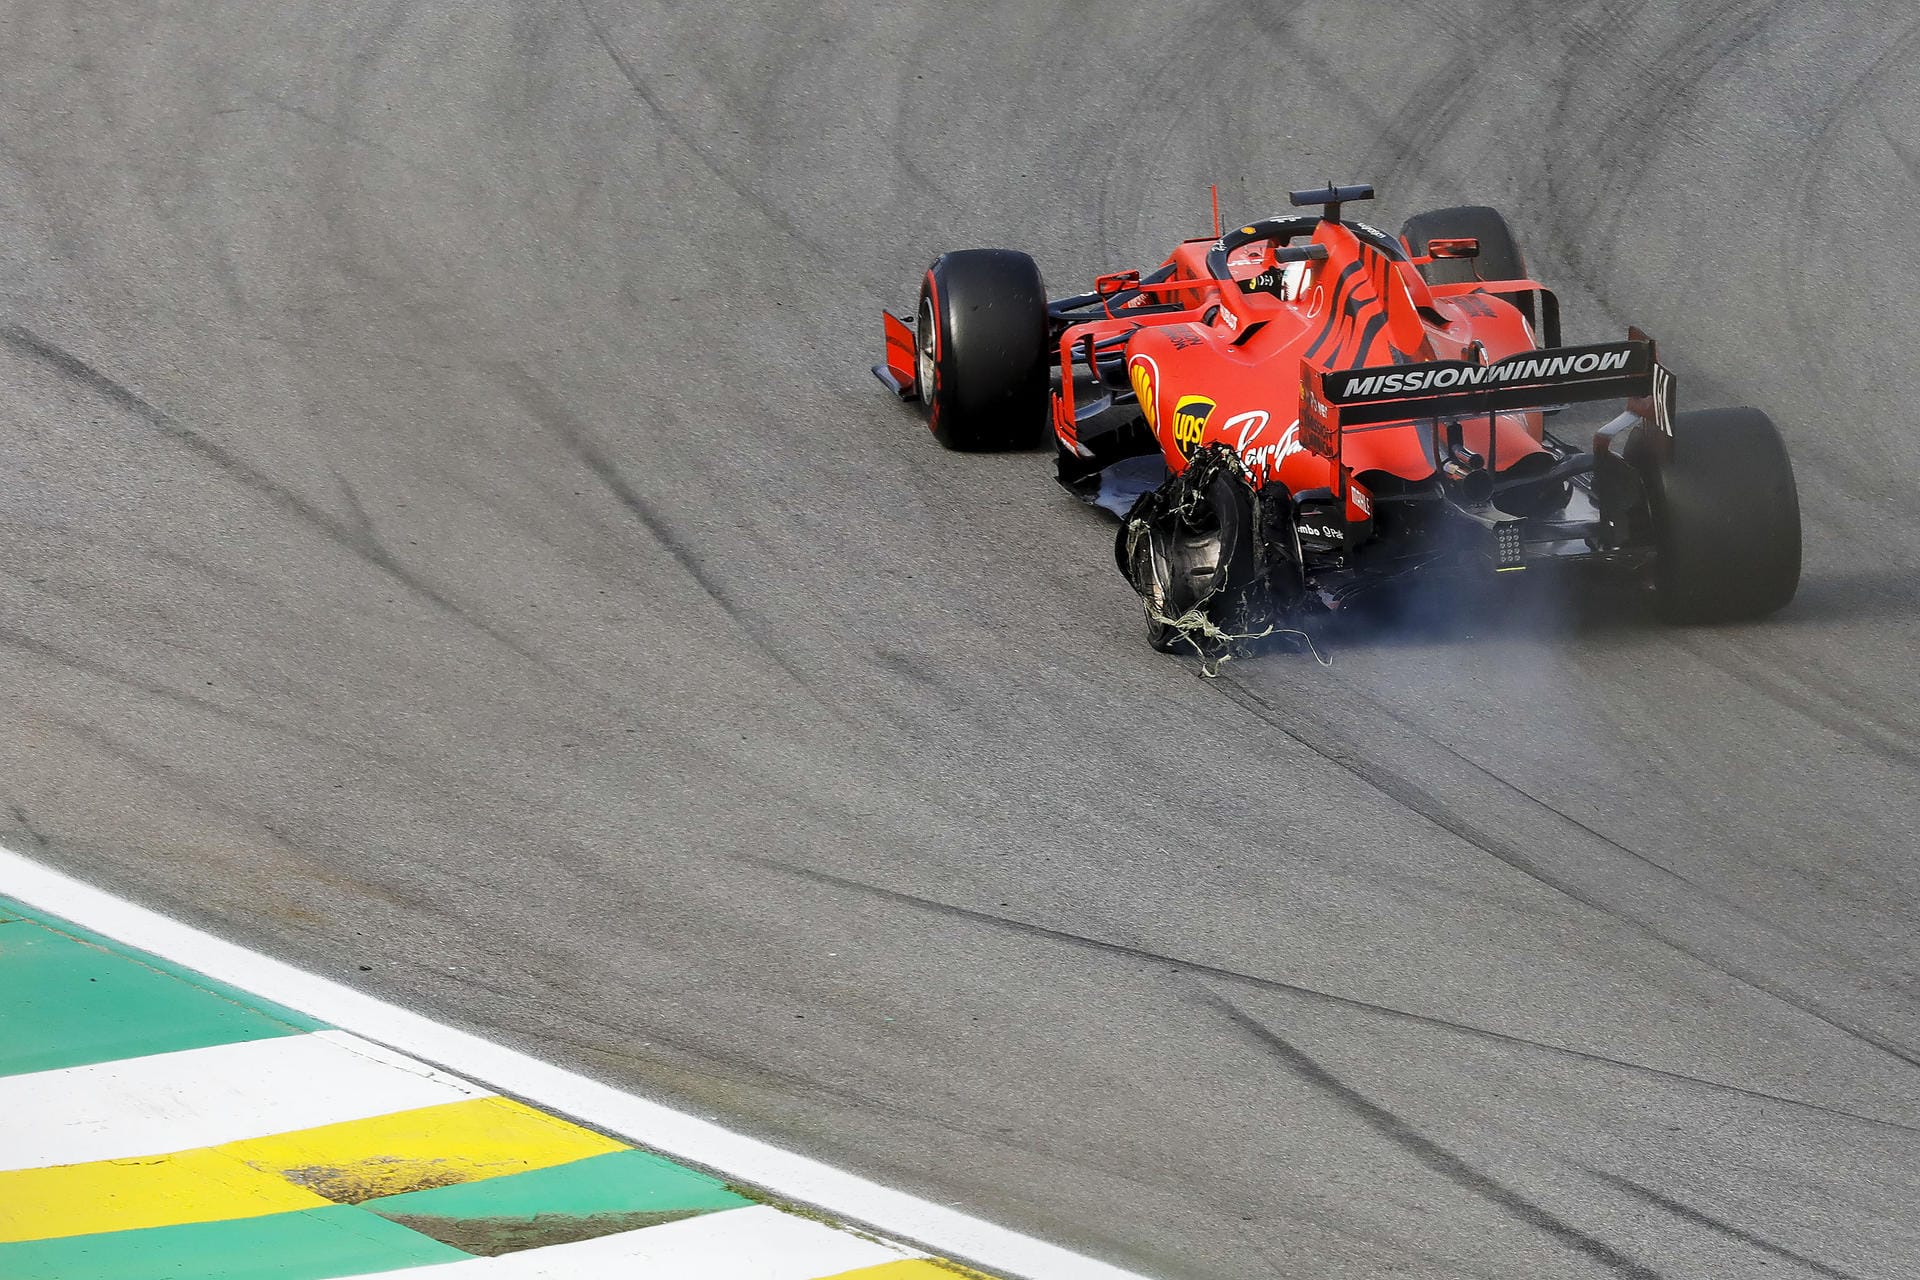 "AS" (Spanien): "Vettel und Leclerc sorgen für ein Schisma bei Ferrari: Bis zur vorletzten Safety-Car-Phase fuhren Vettel und Leclec in Reichweite zum Podium. Es lief alles gut, bis Leclerc das riskante Manöver im Senna-S an Vettel unternahm. Der Vierfach-Champion revanchierte sich. Die Folge: Doppelausfall und Wut in Maranello."